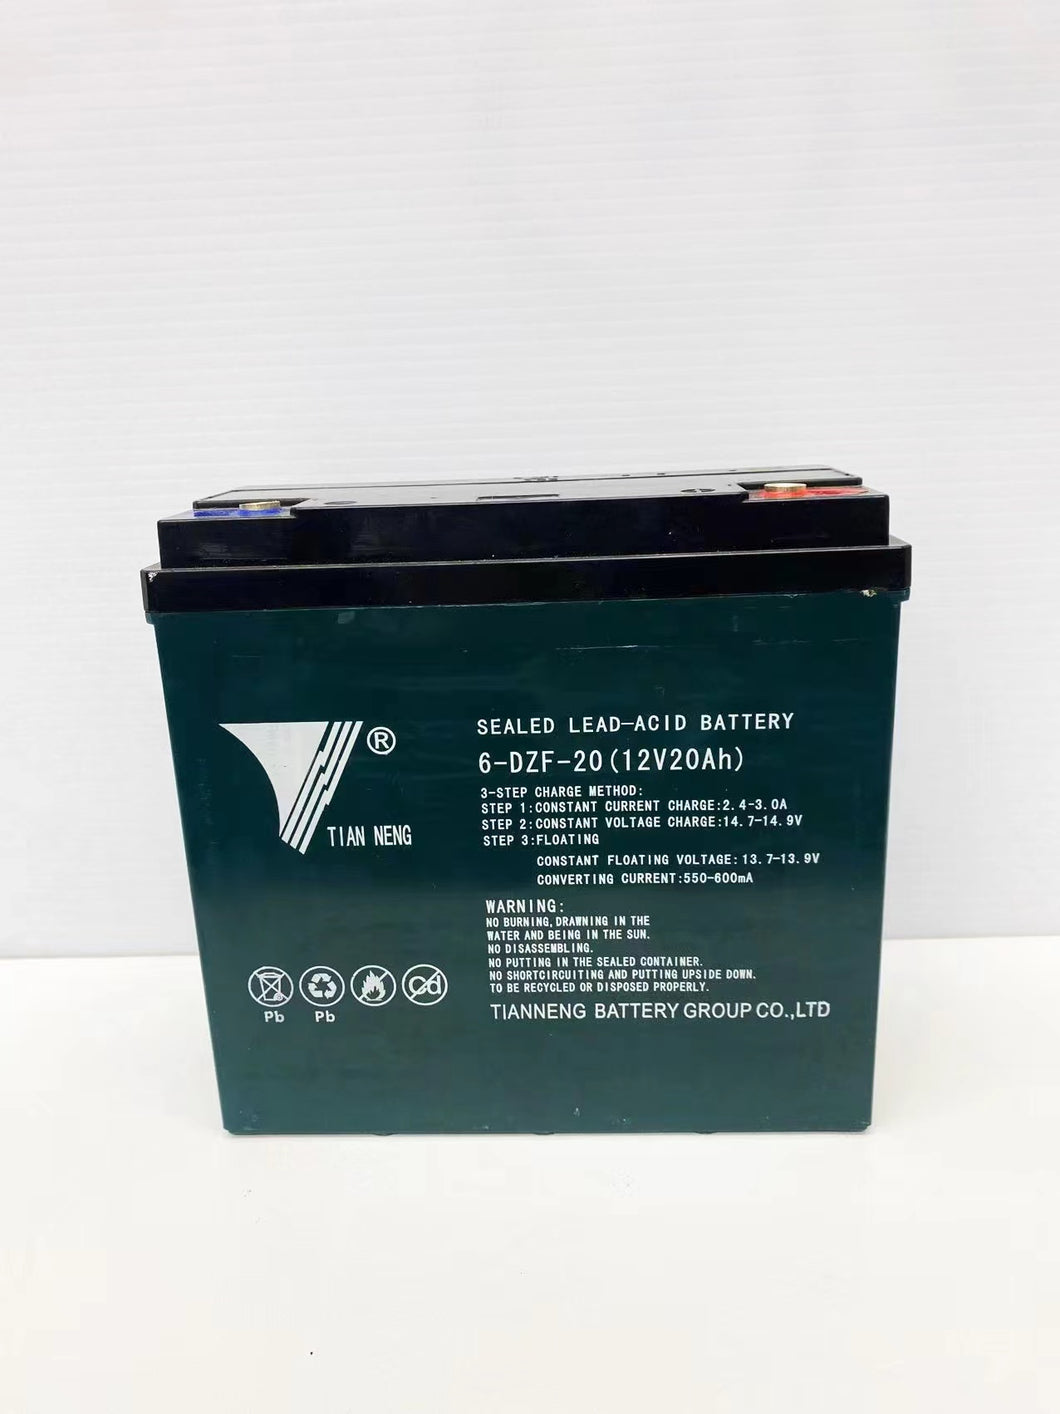 Sealed Lead-Acid Battery 12V20AH